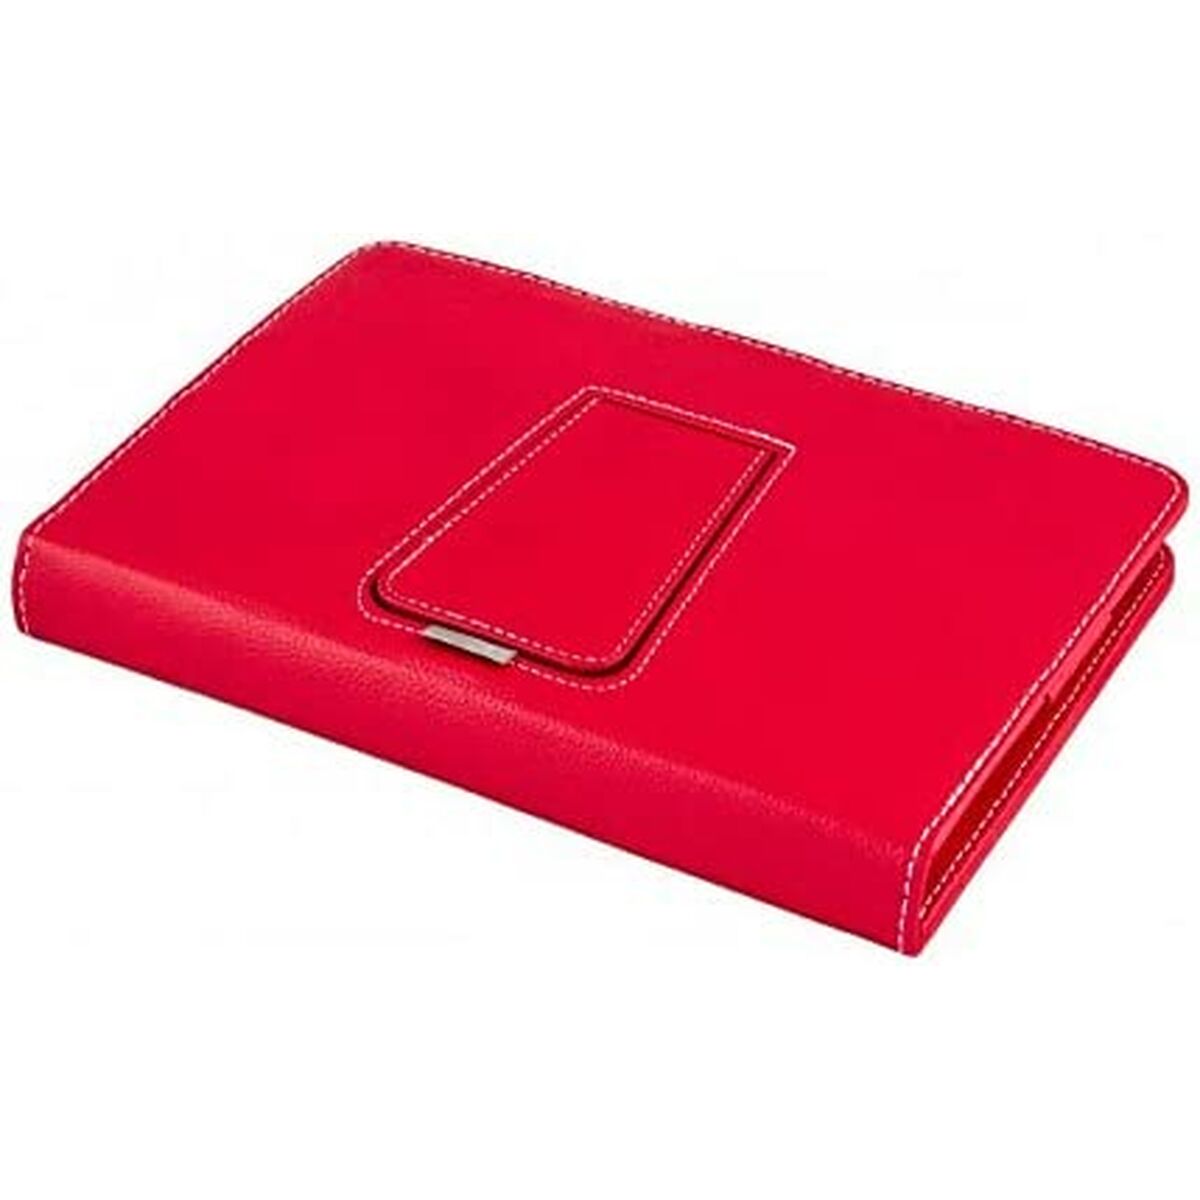 Tablet- und Tastatur-Abdeckung, Silber, Elektronik, 111916140199, Rot, Spanisch, Qwerty, QWERTY, 9"-10,1"